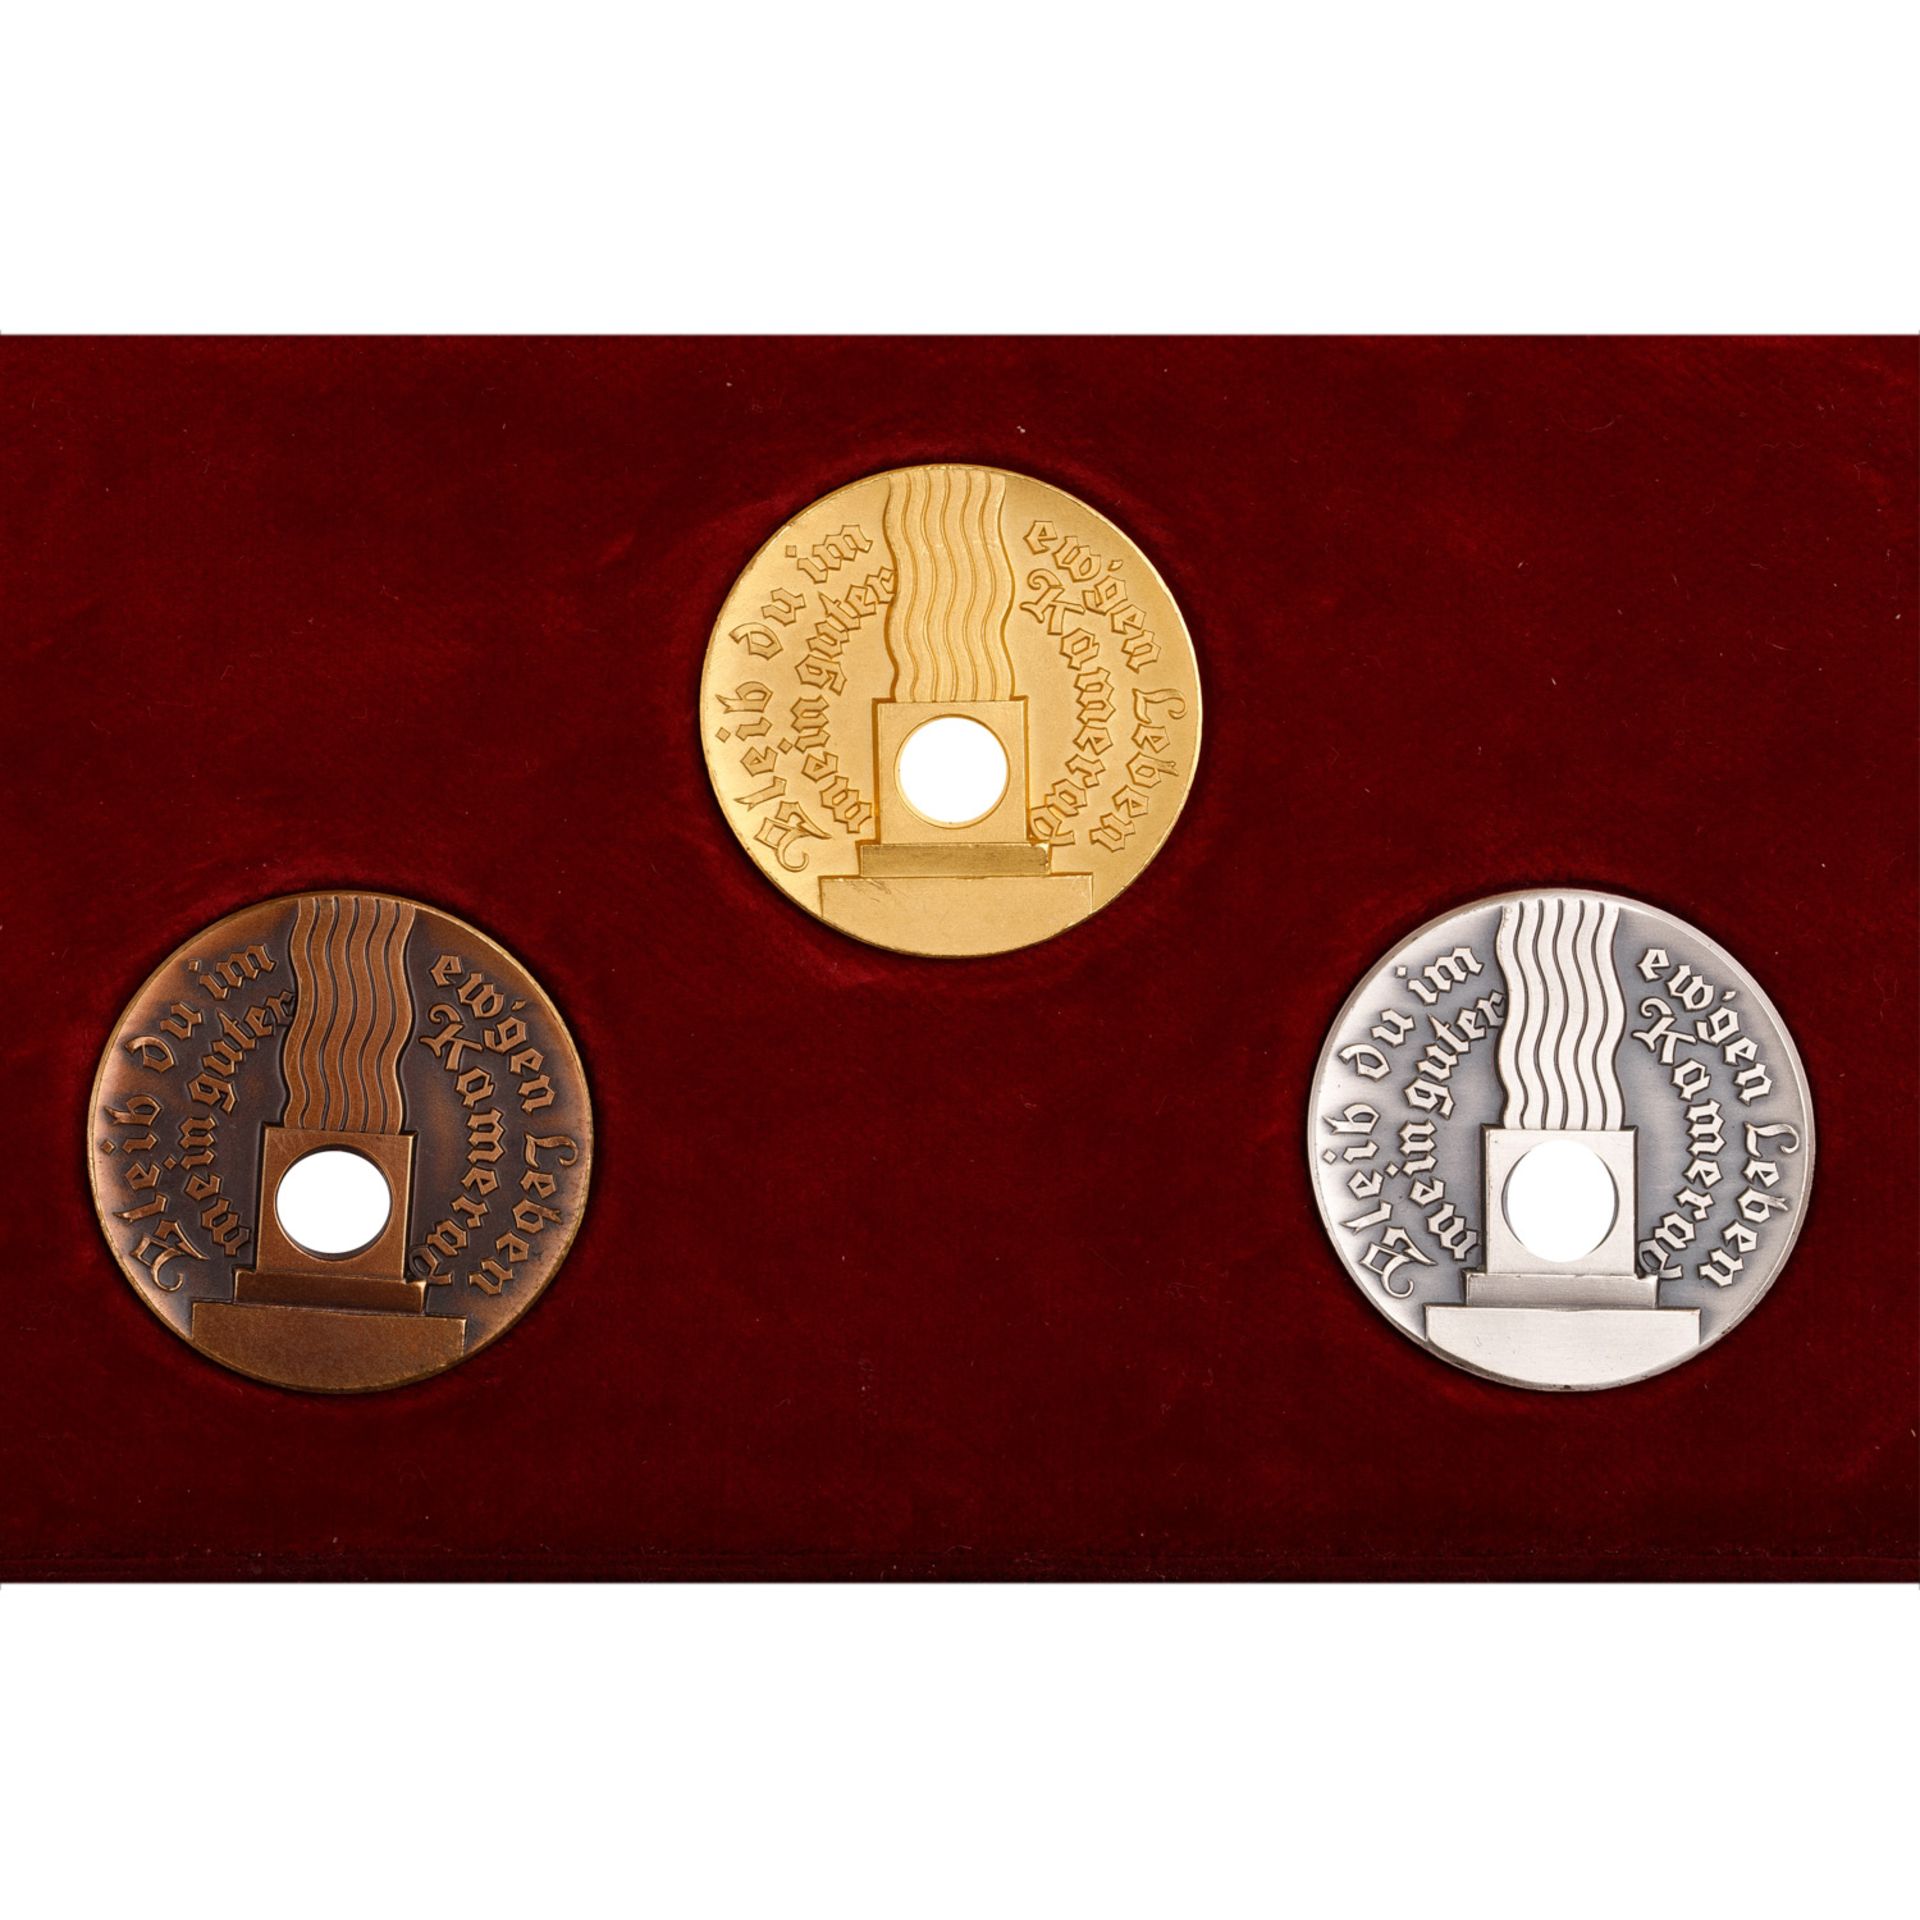 Deutsches Reich 1933-1945 - Extrem selten als Set angebotene Medaillen-Trilogie in GOLD (999), SILBE - Bild 4 aus 6